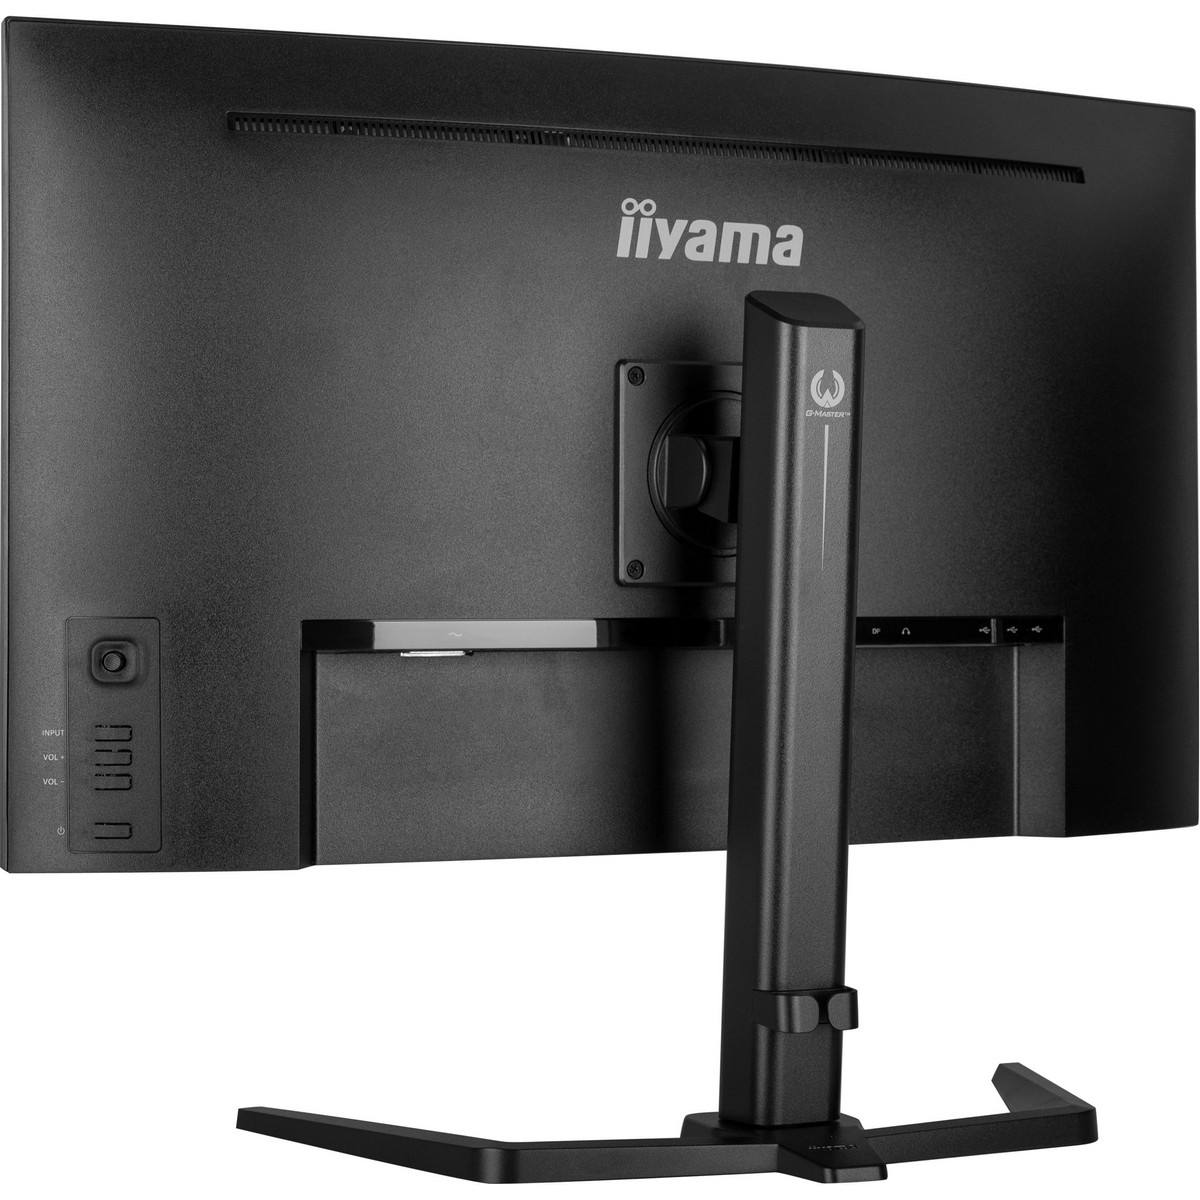 Iiyama - iiyama 32" G-Master GCB3280QSU-B1 2560x1440 VA 165Hz 0.2ms FreeSync Curved Gaming Monitor